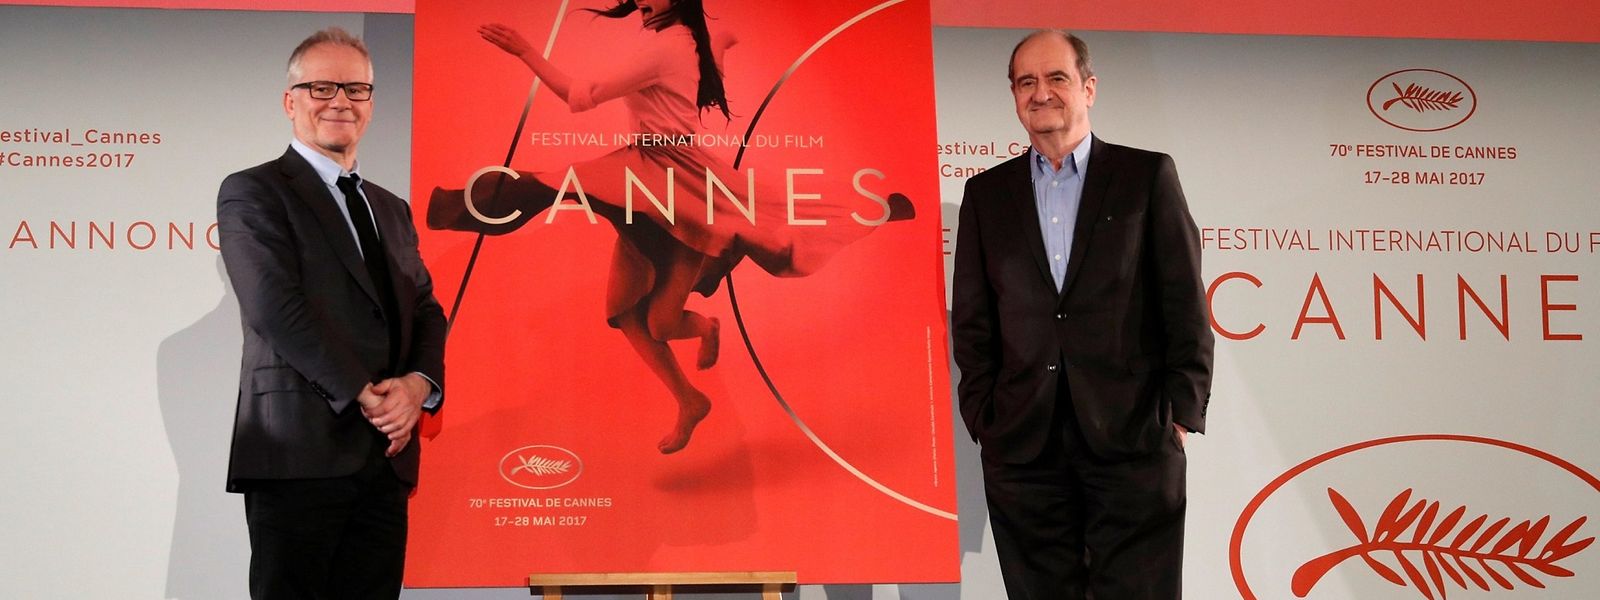  O 70° Festival de Cannes começa hoje e decorre até 28 de maio. 